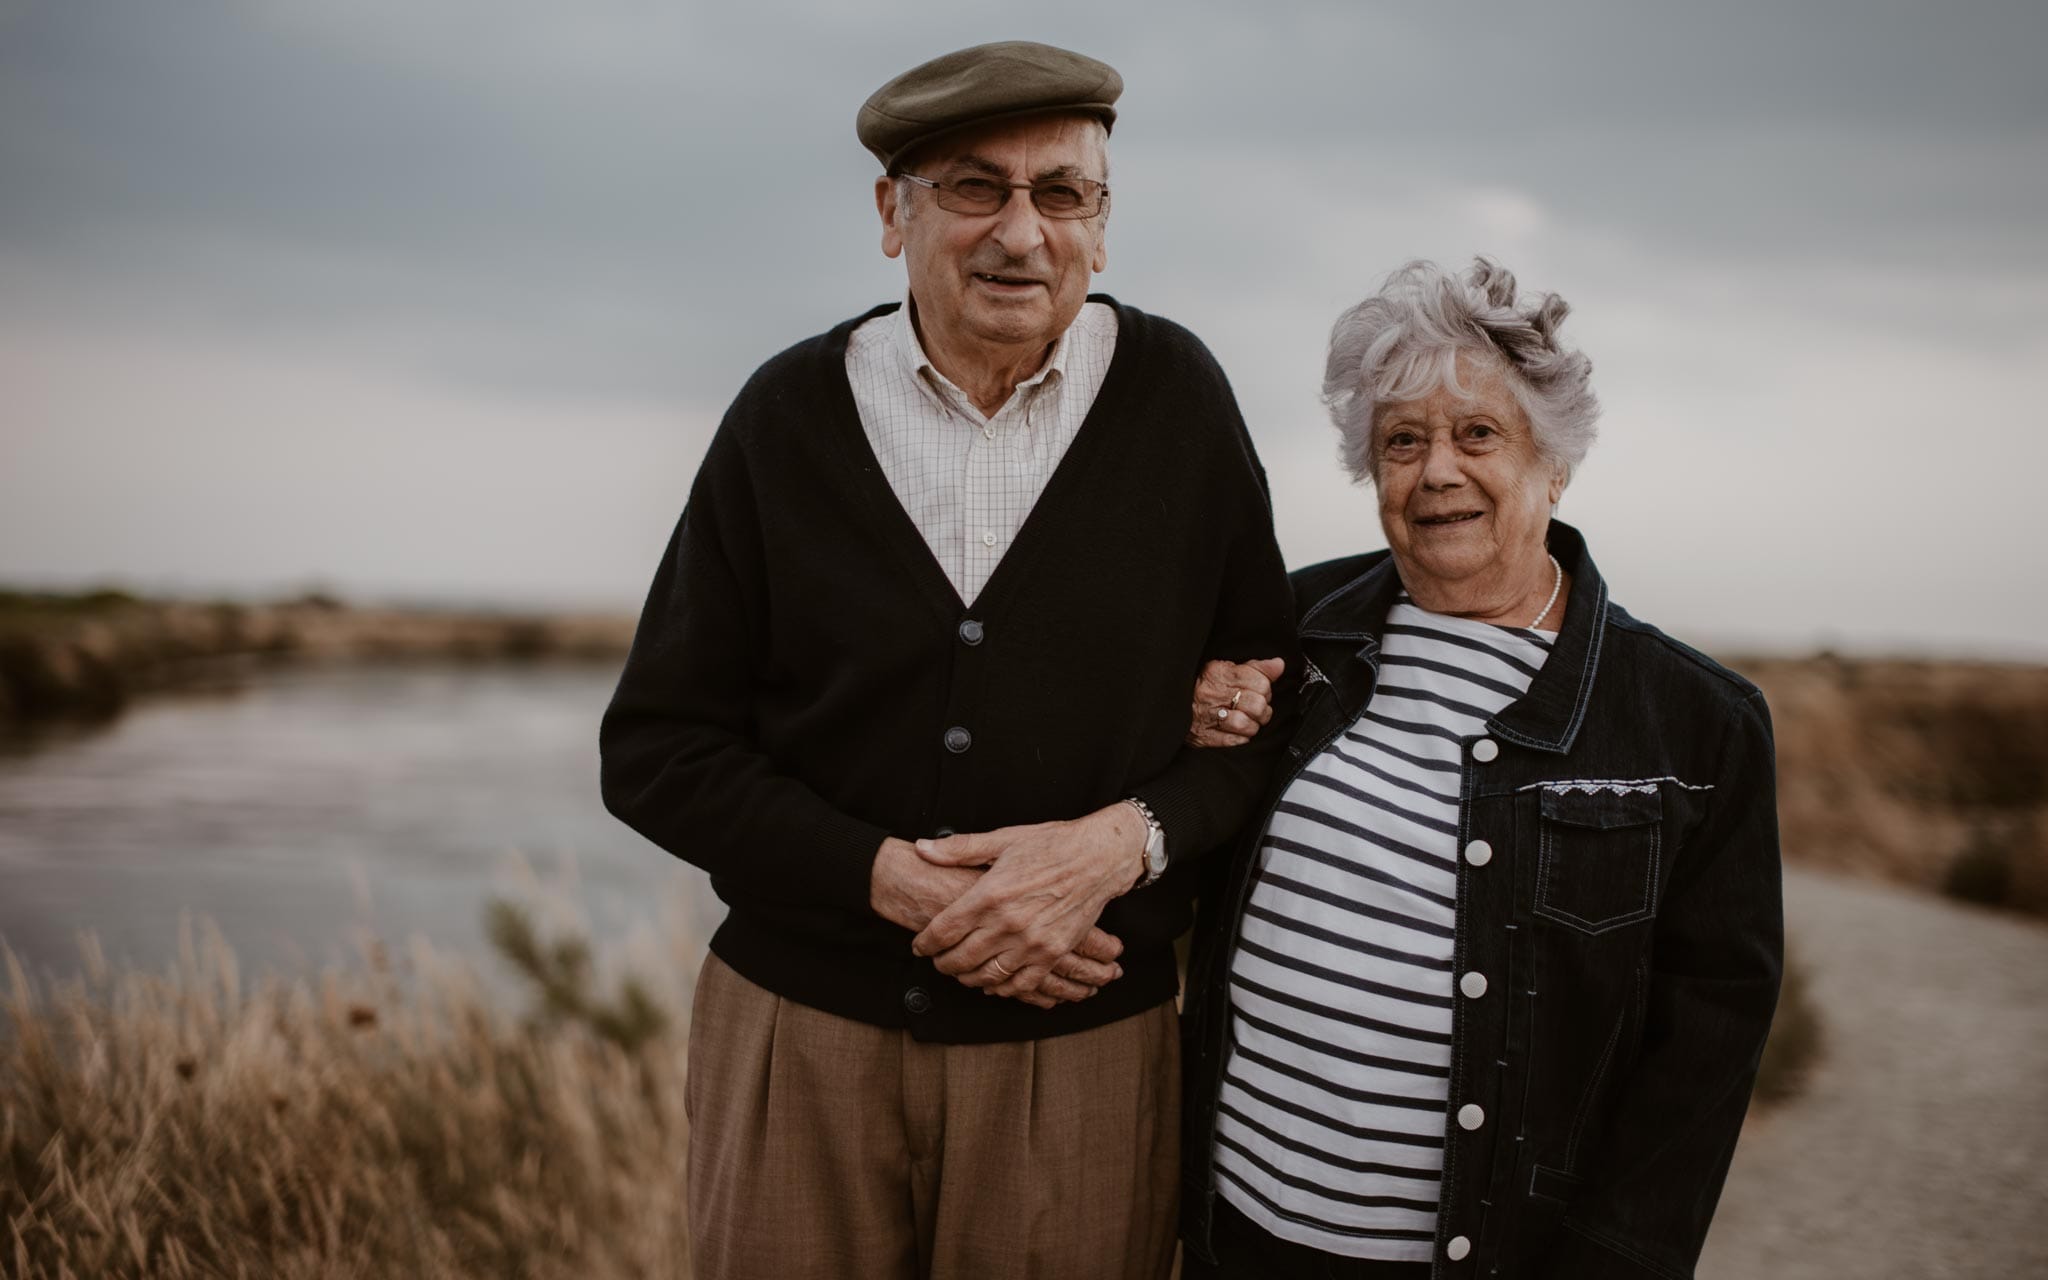 Séance photo lifestyle de grands-parents à Guérande et dans les marais salants par Geoffrey Arnoldy photographe